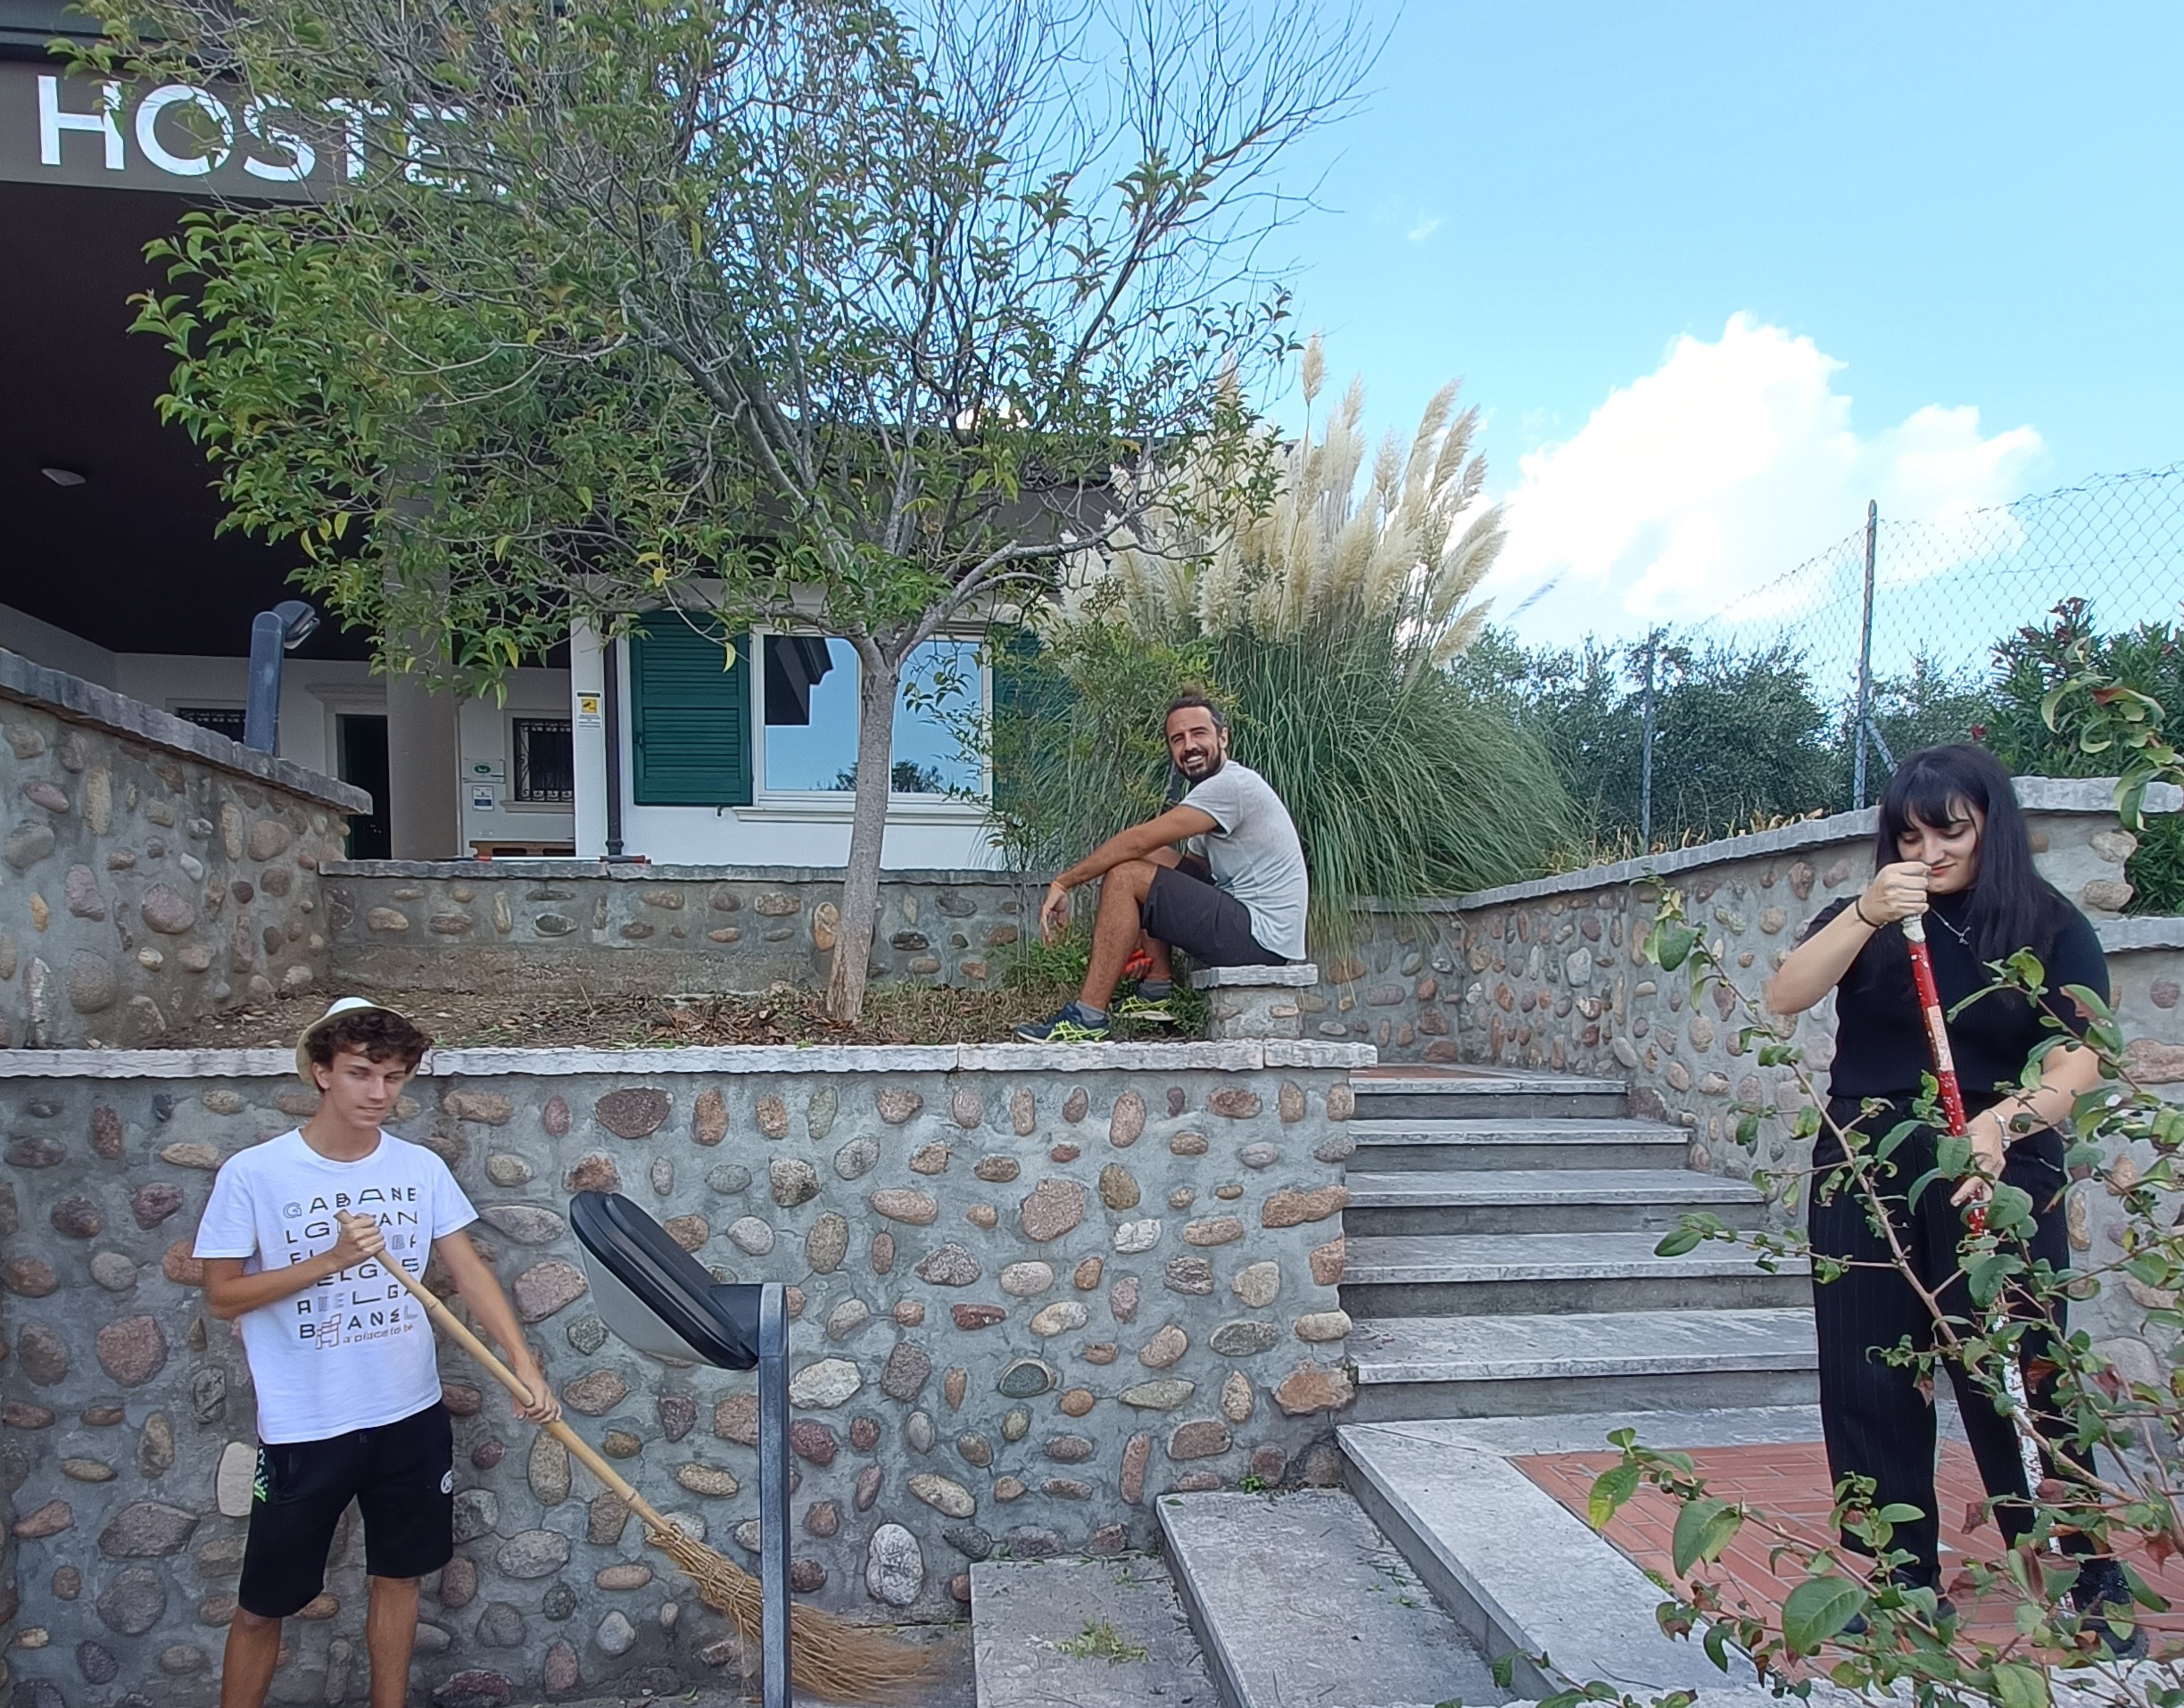 Gabanel Bike Hostel e cooperativa Hermete al centro del crowdfunding di Intesa Sanpaolo: 100mila€ per riportare attivi i Neet della Valpolicella